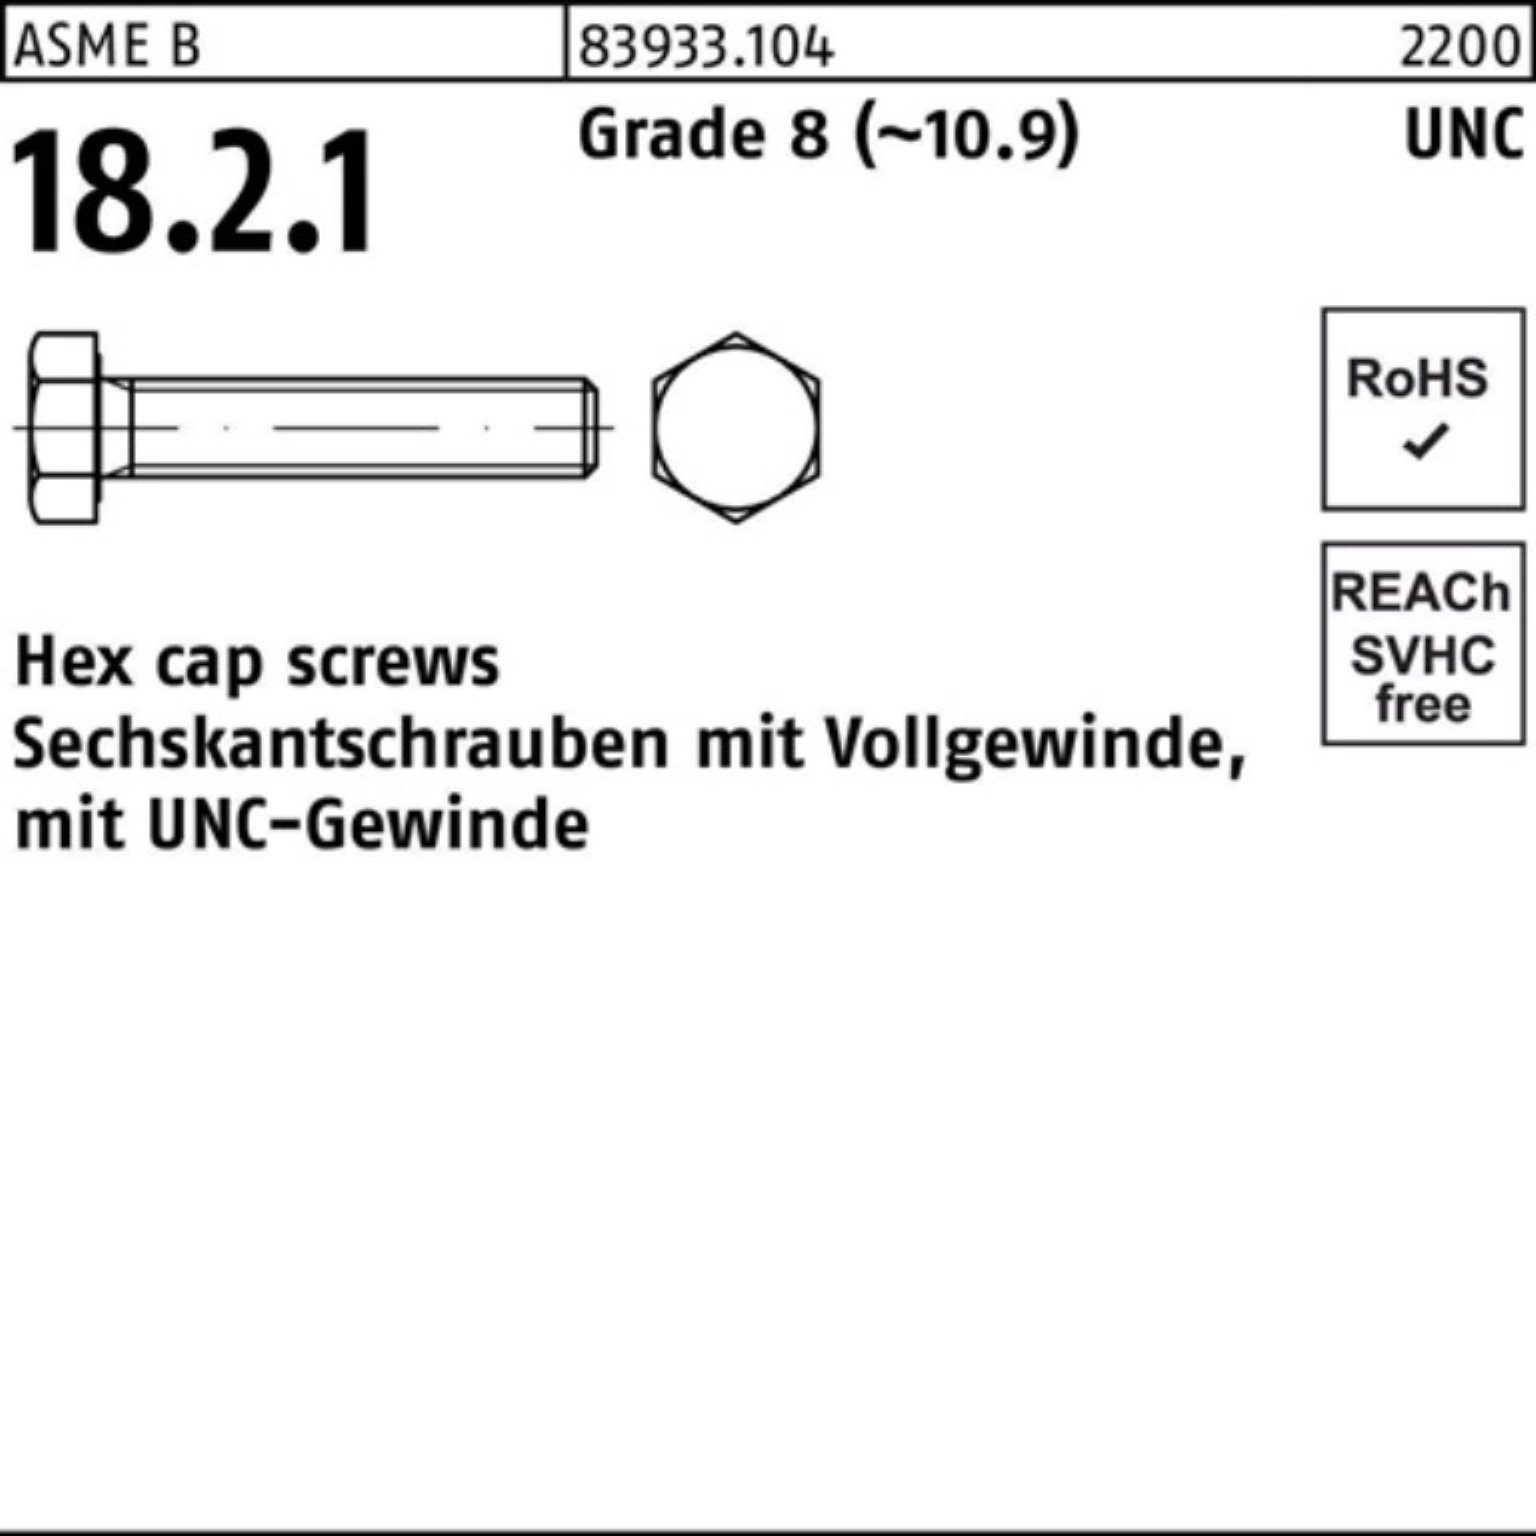 Reyher Sechskantschraube 100er Pack Sechskantschraube R 83933 UNC-Gewinde VG 3/8x 1 1/4 Grade 8 | Schrauben